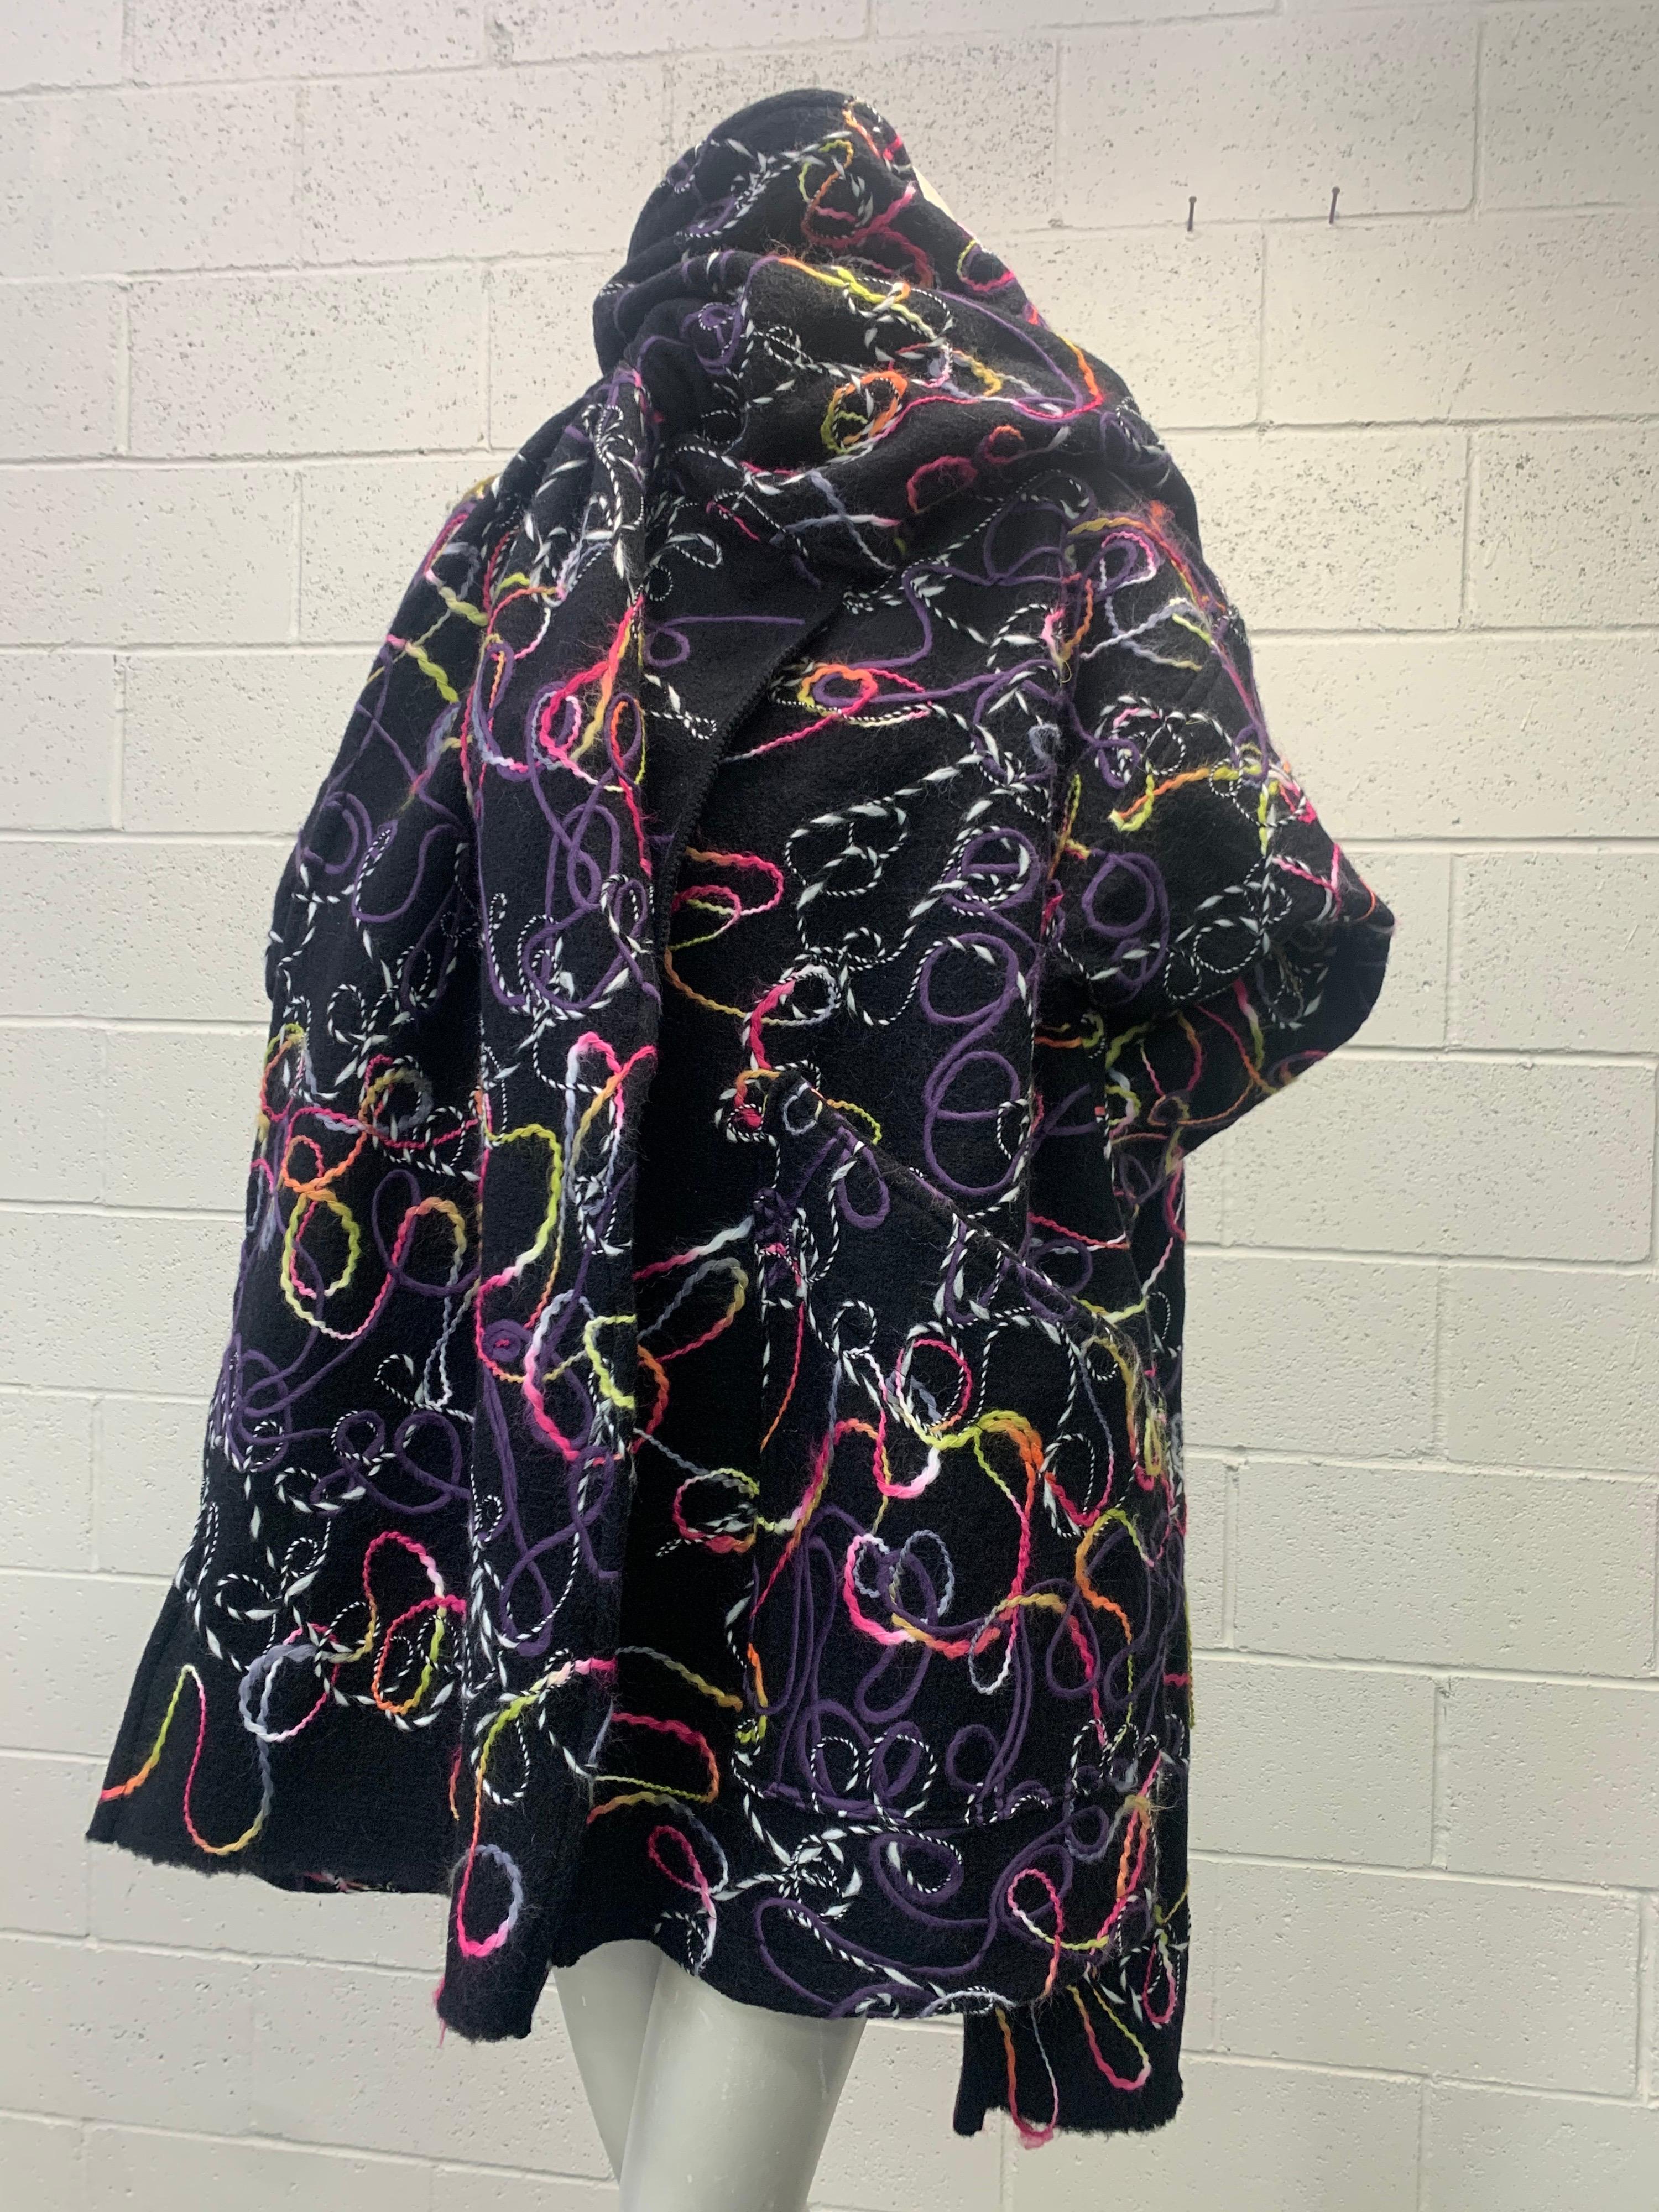 Inspiré par le style des années 80, Torso Creations conçoit de façon magistrale ce manteau surdimensionné à partir de tissus de rebut fabriqués en Italie. Ce lourd tissu en laine feutrée présente des tourbillons de fils tissés aux couleurs vives, en